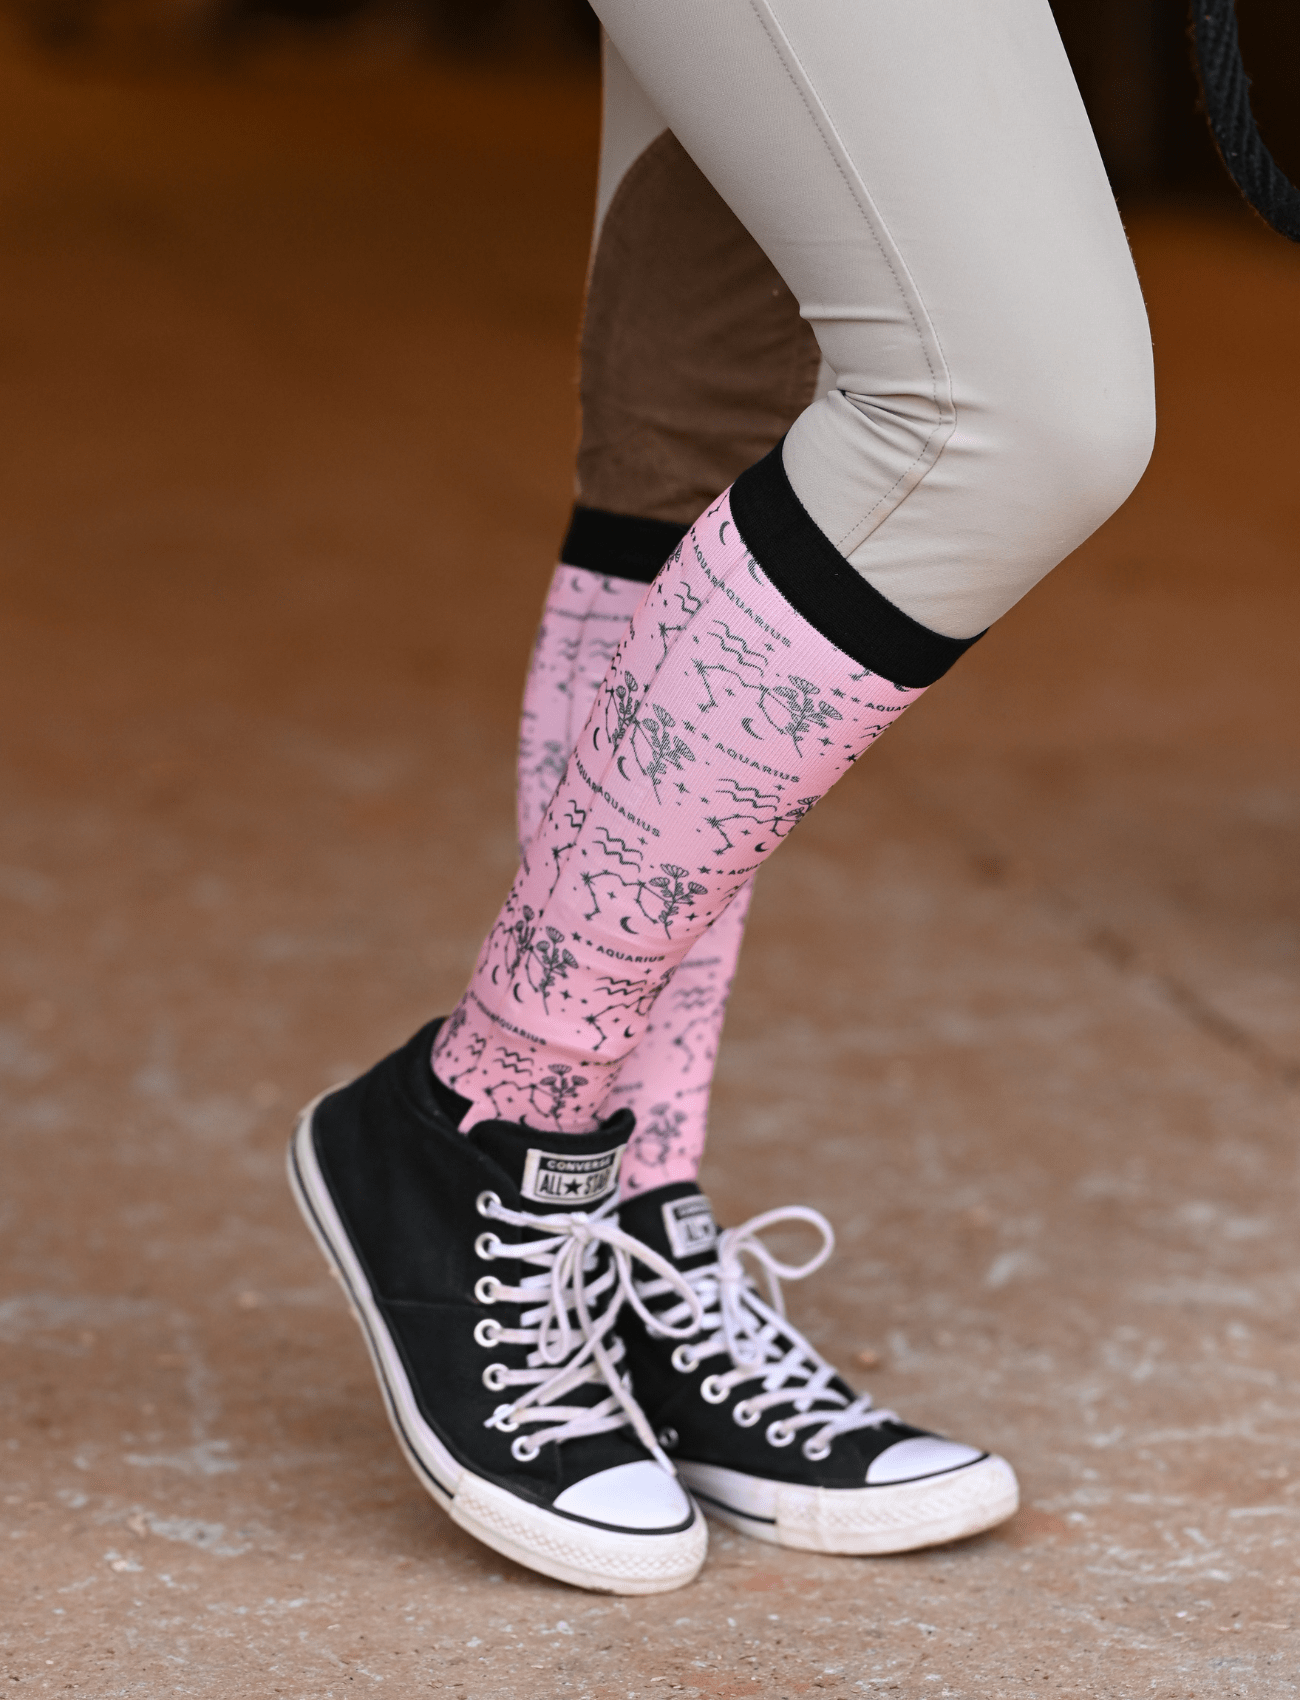 D&S LIMITED EDITION Limited Edition Limited Floral Aquarius Socks equestrian boot socks boot socks thin socks riding socks pattern socks tall socks funny socks knee high socks horse socks horse show socks